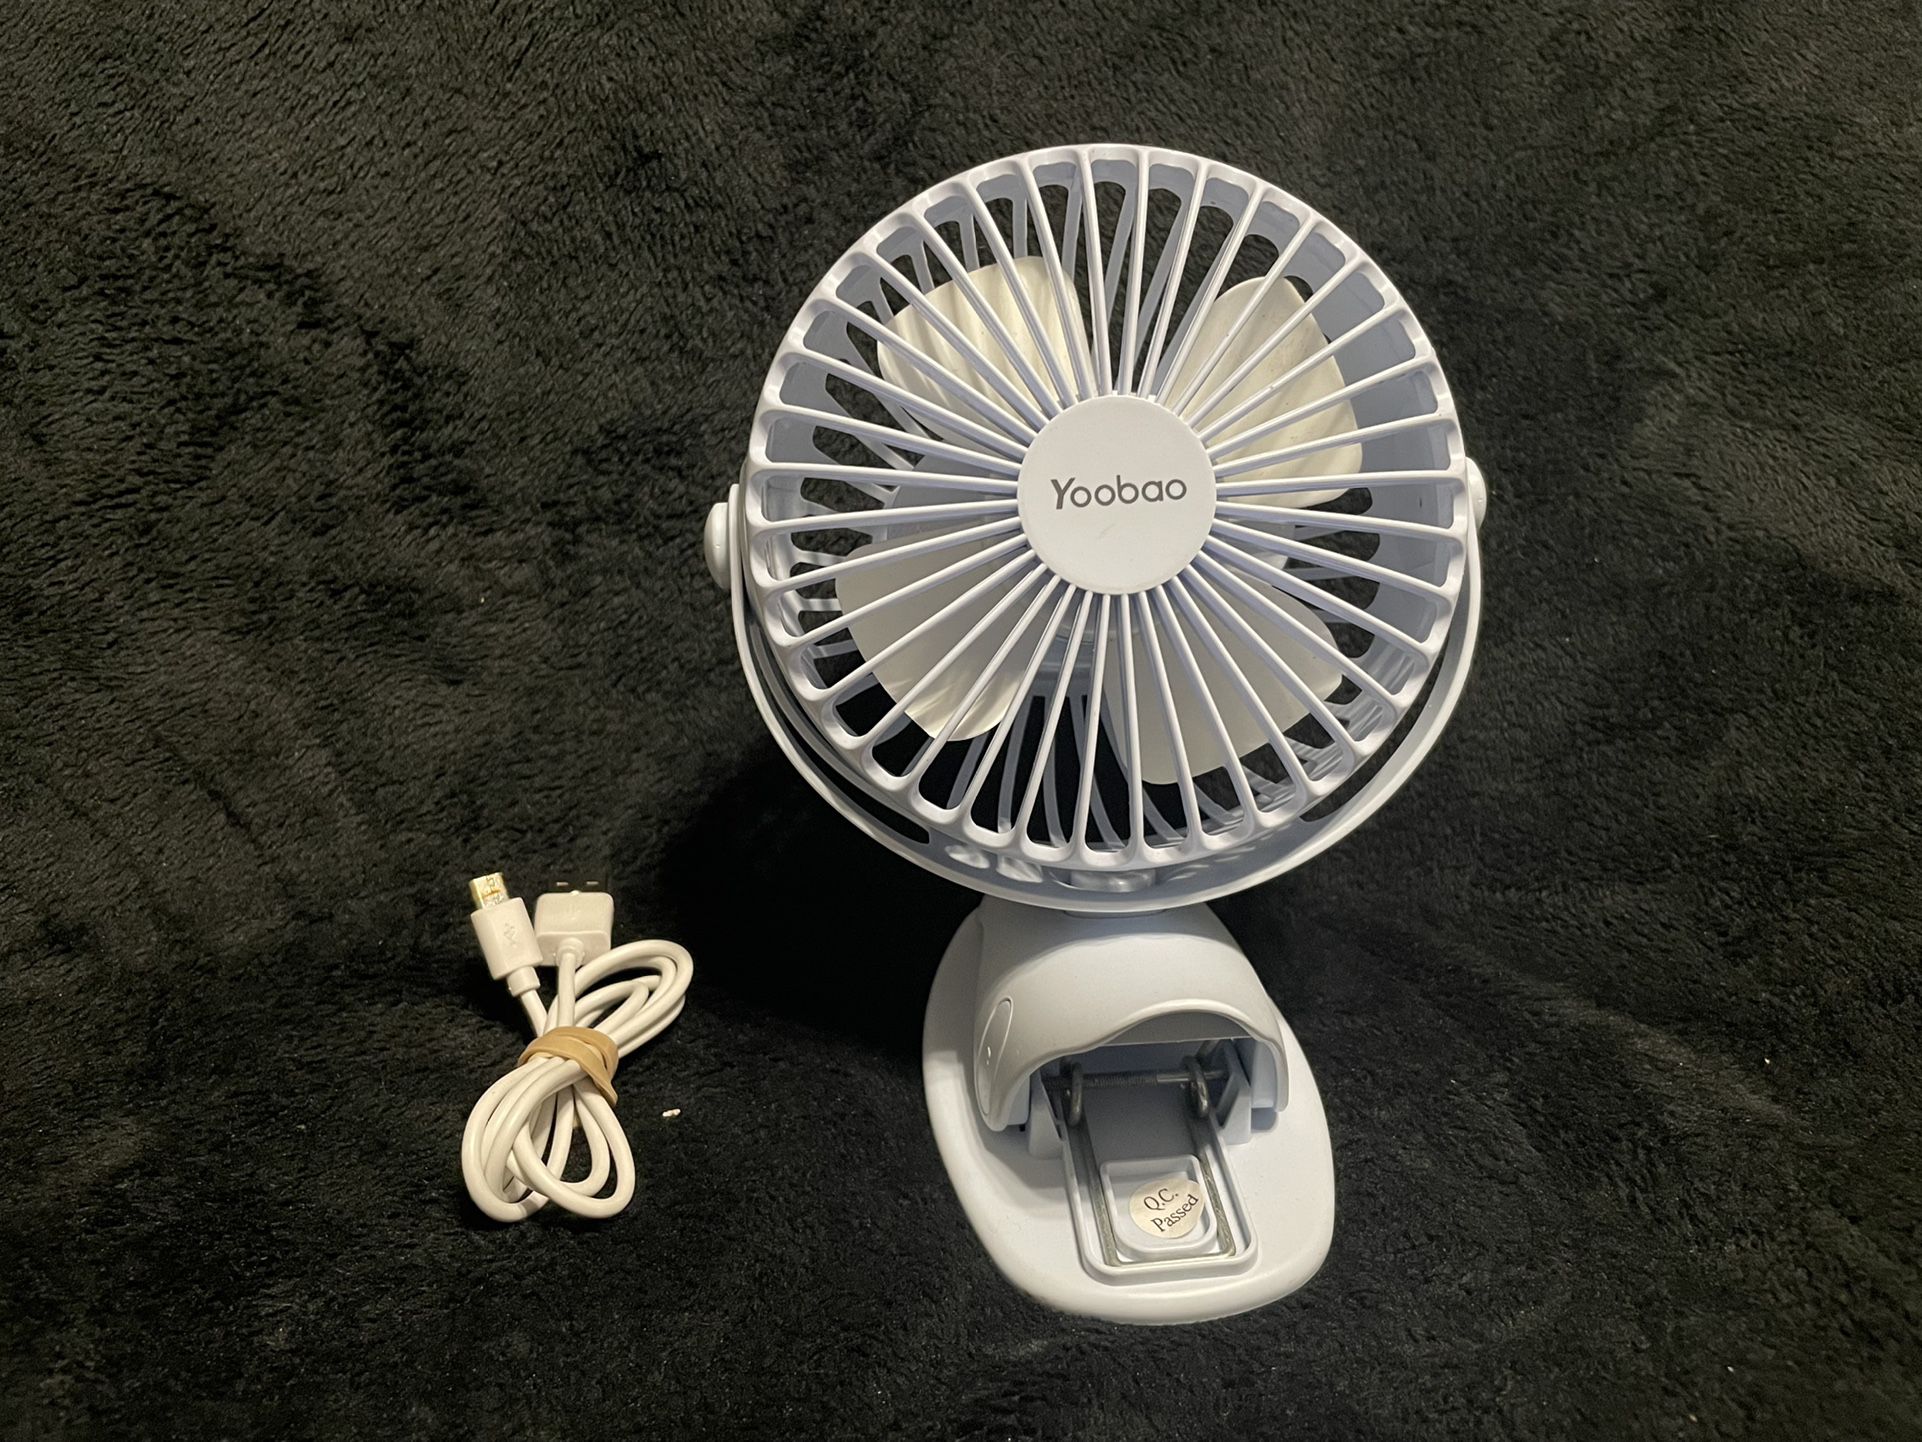 Yoobao Y-f04 USB Fan Rechargeable Handheld Mini Fan Clip Desktop 4-Level Small Fans Electrical Fan Black 6400mAh